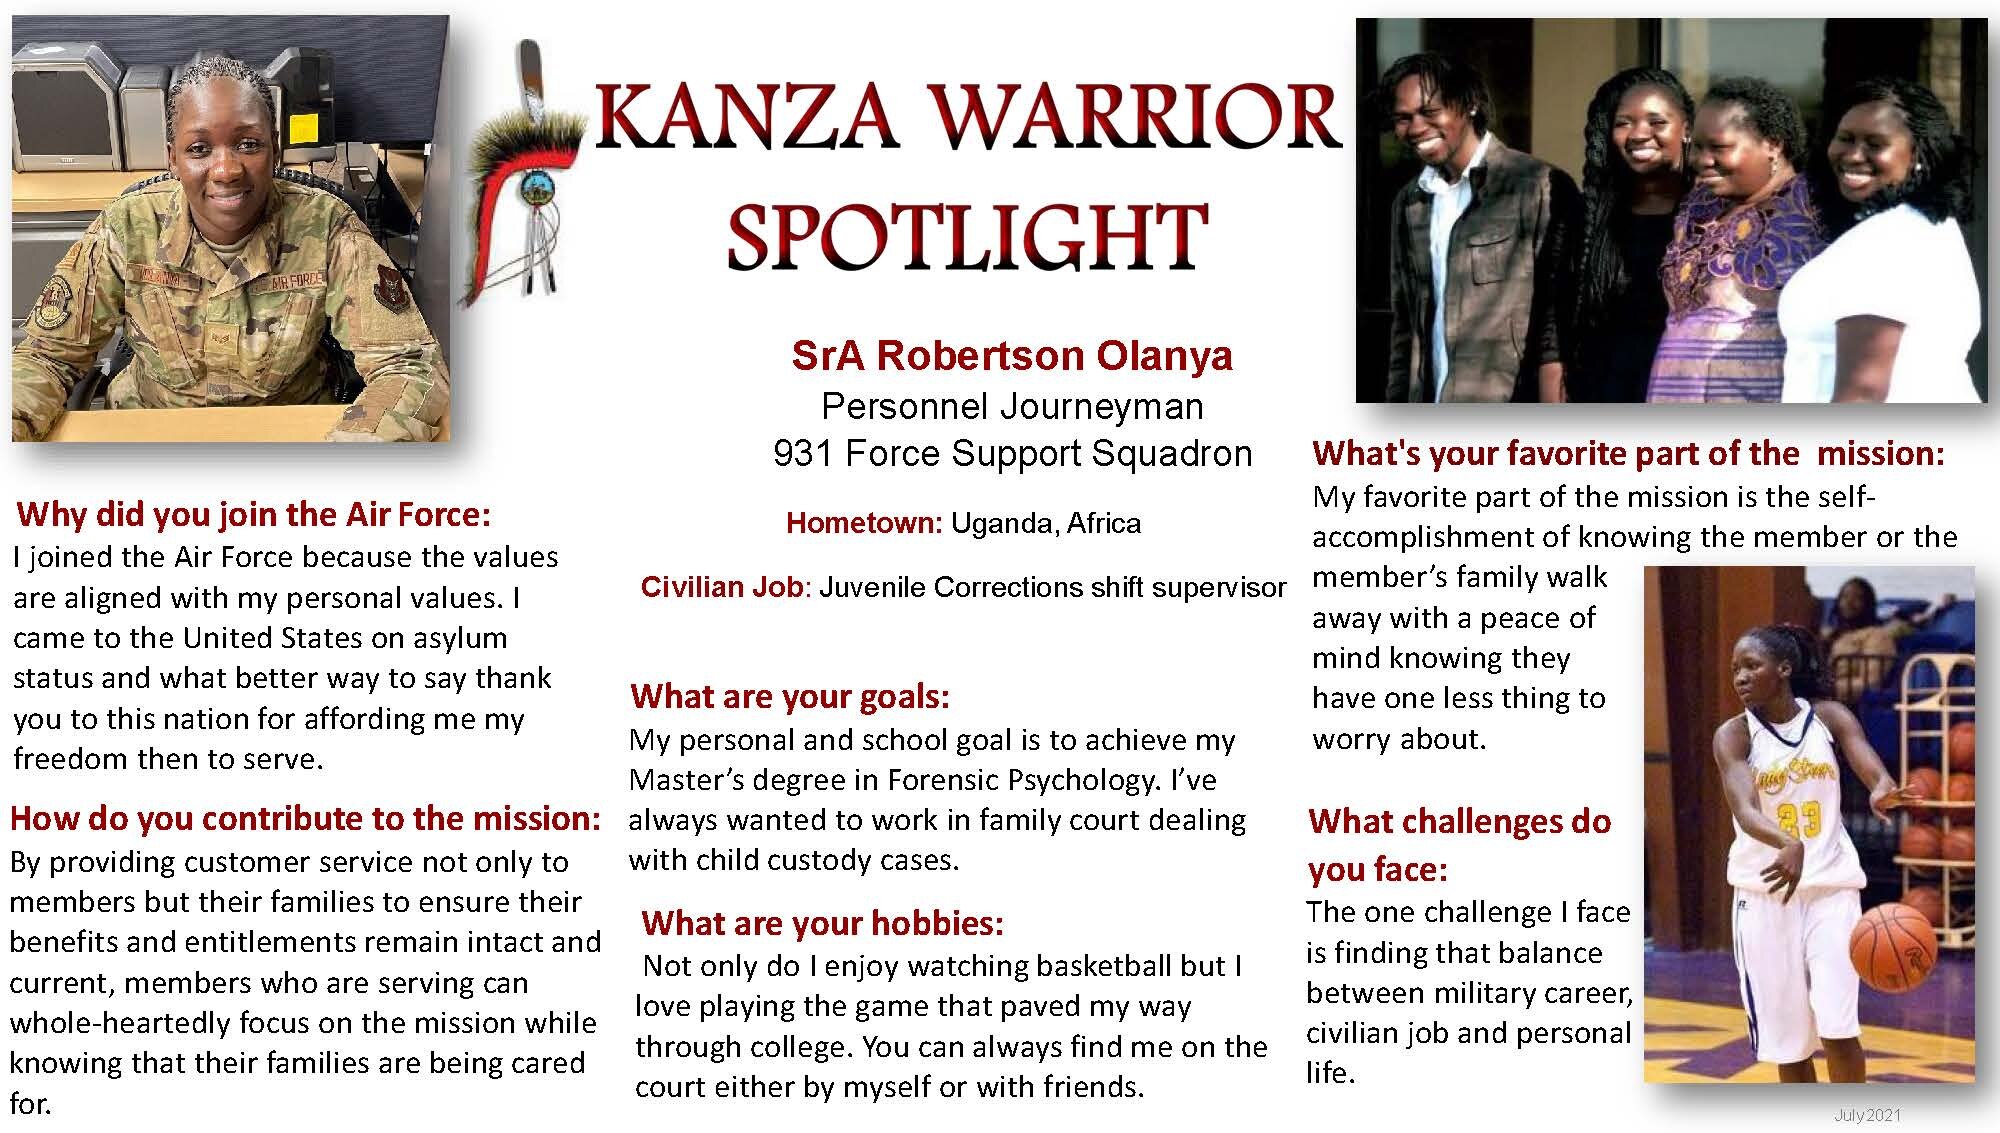 KANZA Warrior Spotlight July 2021